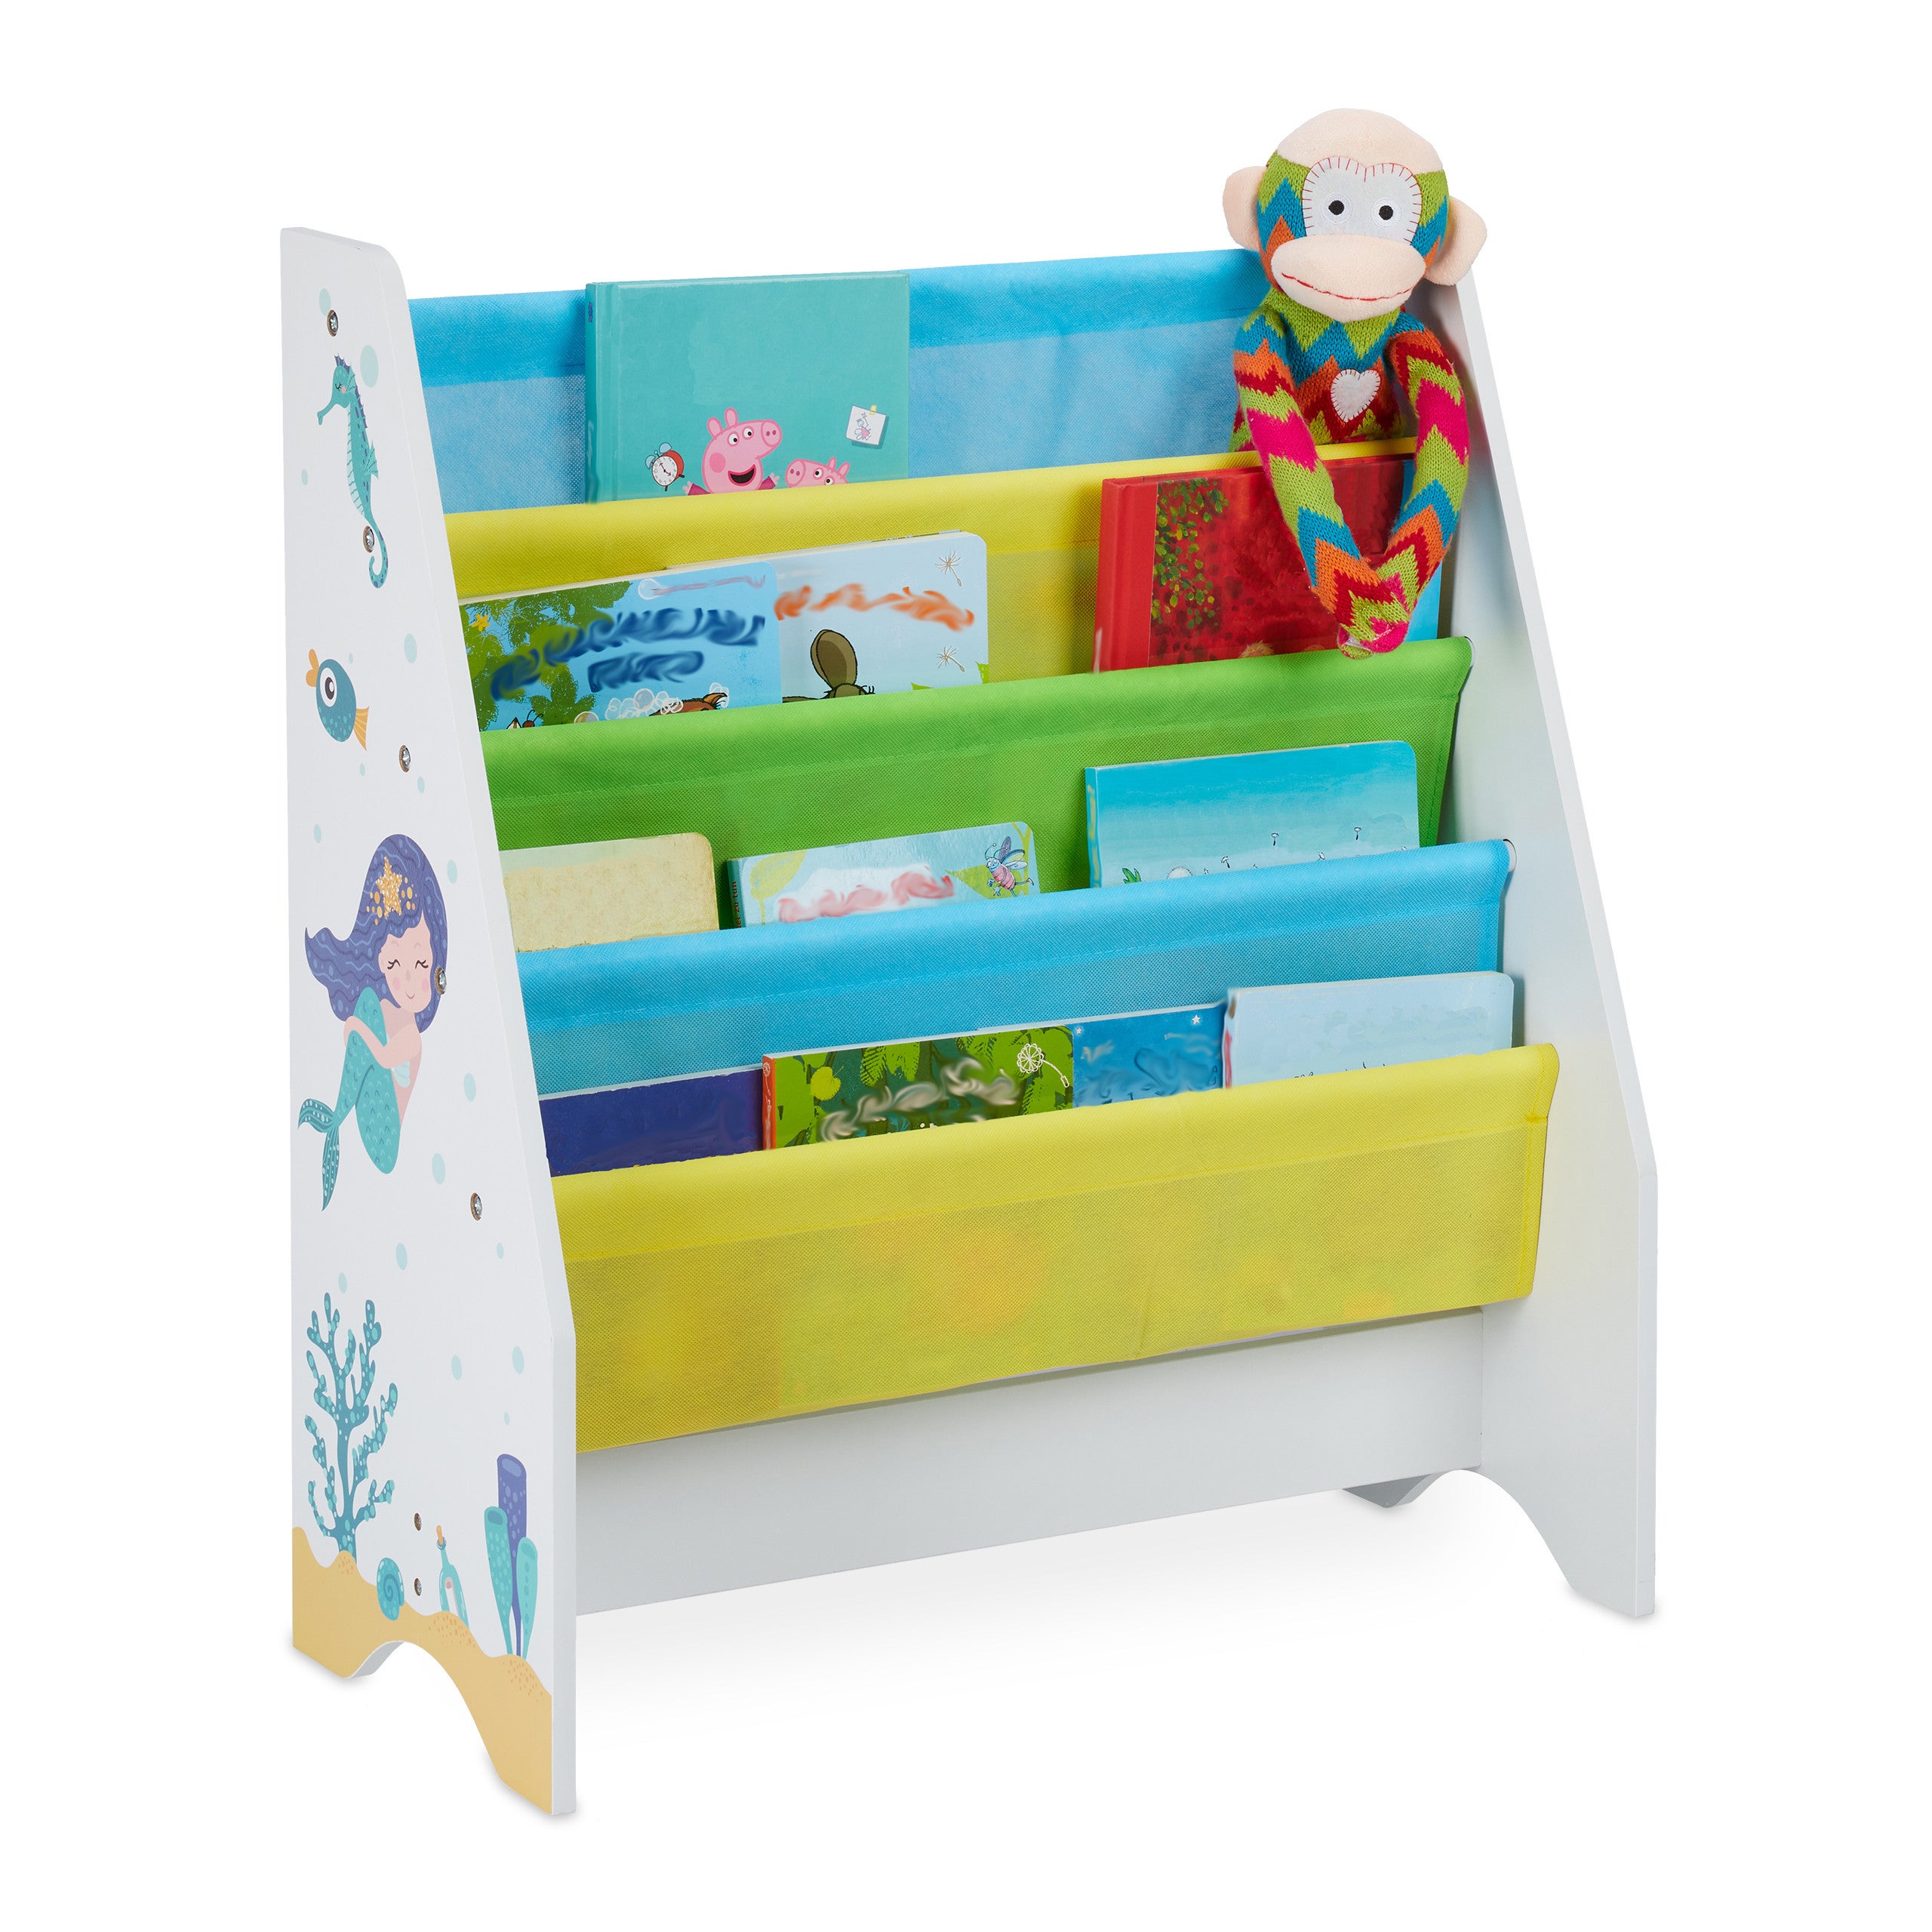 Relaxdays Scaffale Libreria Bambini Colorato Bimbi Dimensioni HLP: 71x62x29 cm 4 Scomparti,Immagini di una Sirena 